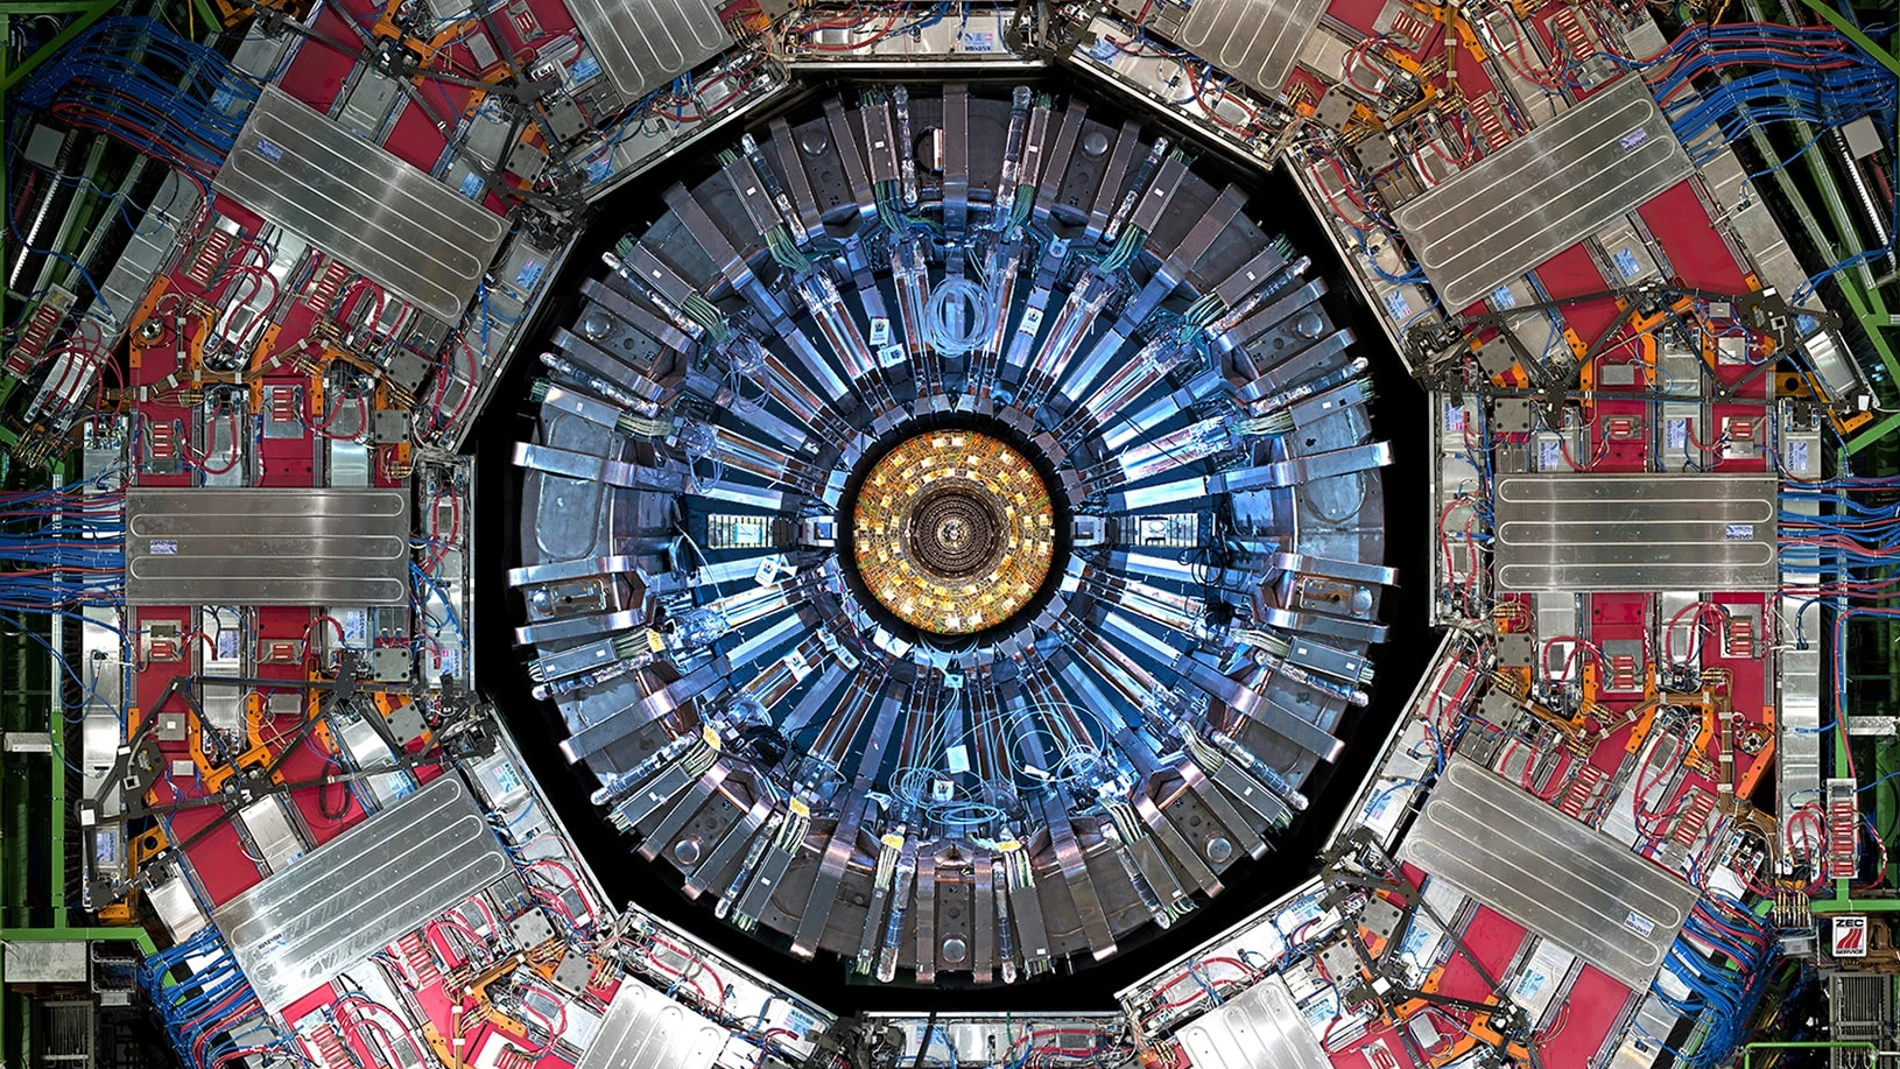 Imagen del experimento CMS, uno de los que está llevando a cabo búsquedas de materia oscura en el LHC, el gran acelerador de partículas del CERN. La imagen muestra varios de los detectores del experimento, organizados en forma de “capas de cebolla”: las partículas salen del centro, van atravesando las diversas capas y dejan información en cada una sobre su identidad y la energía que transportan.